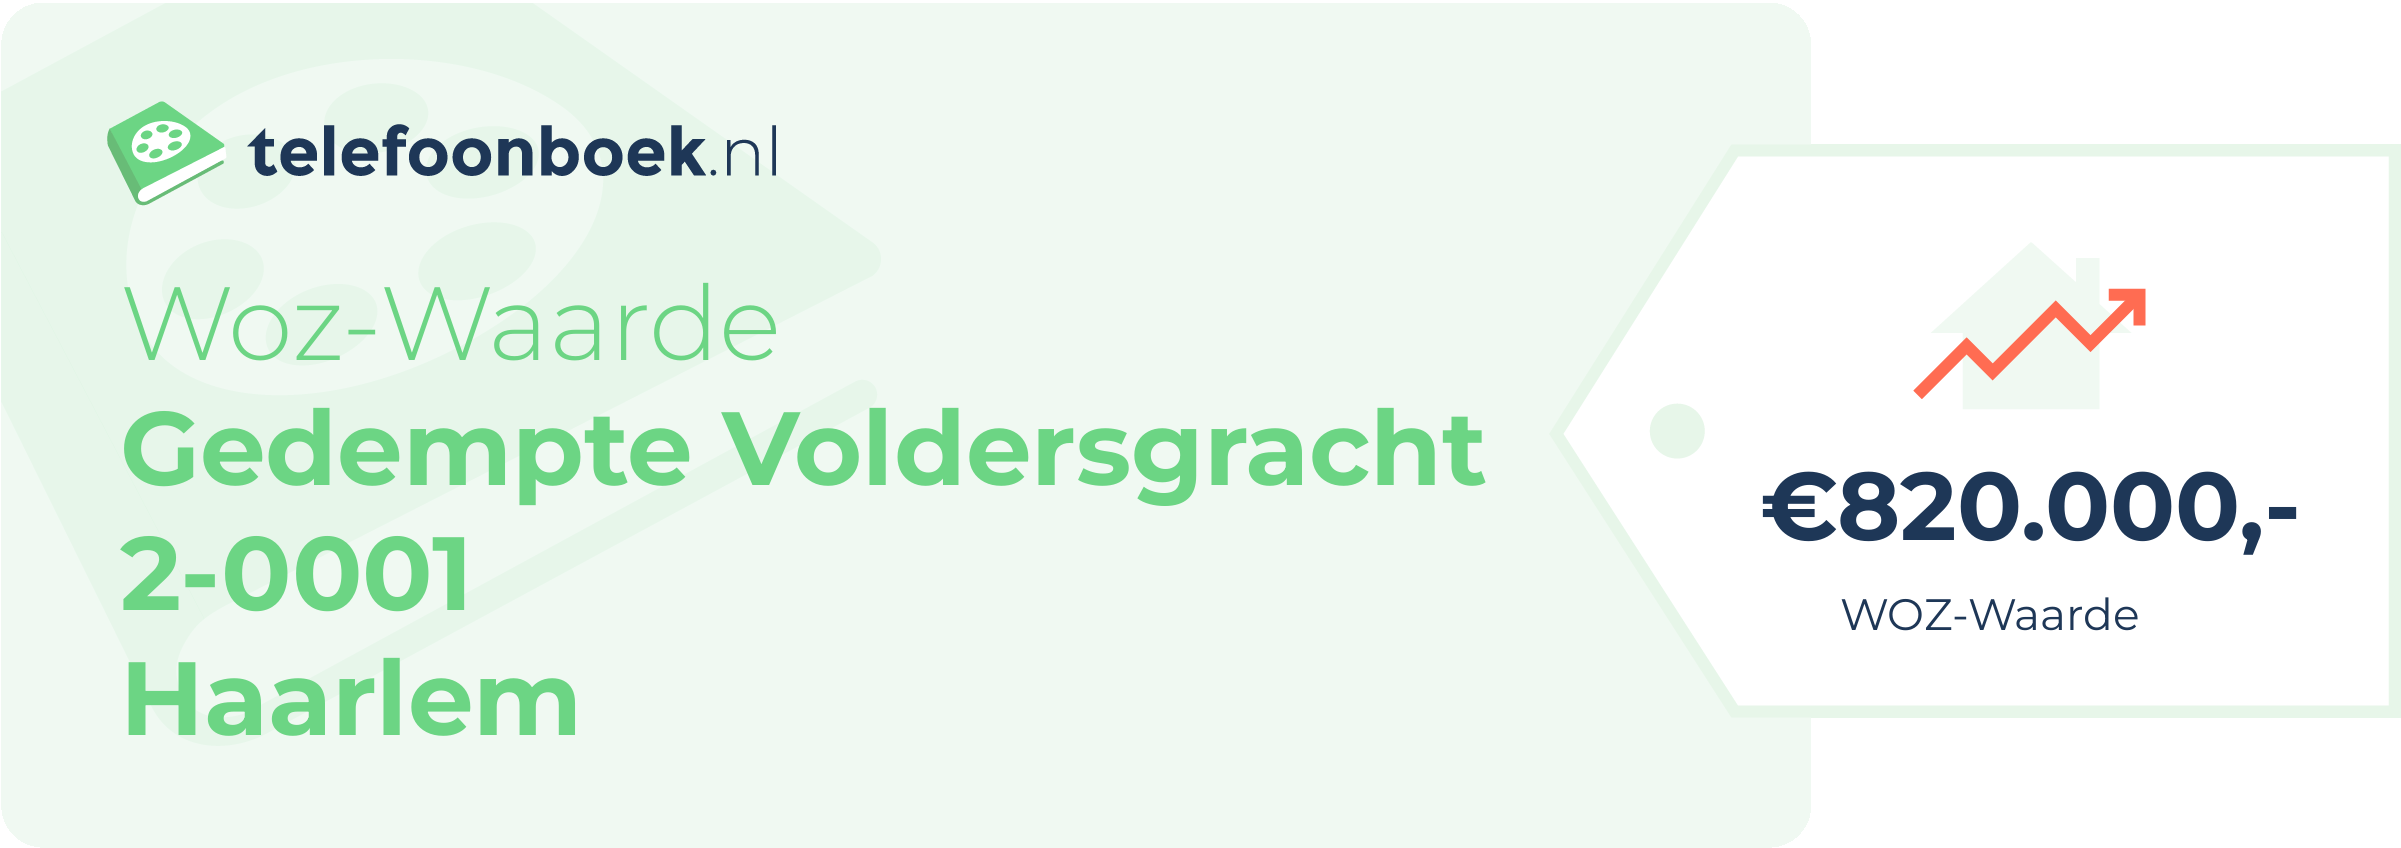 WOZ-waarde Gedempte Voldersgracht 2-0001 Haarlem